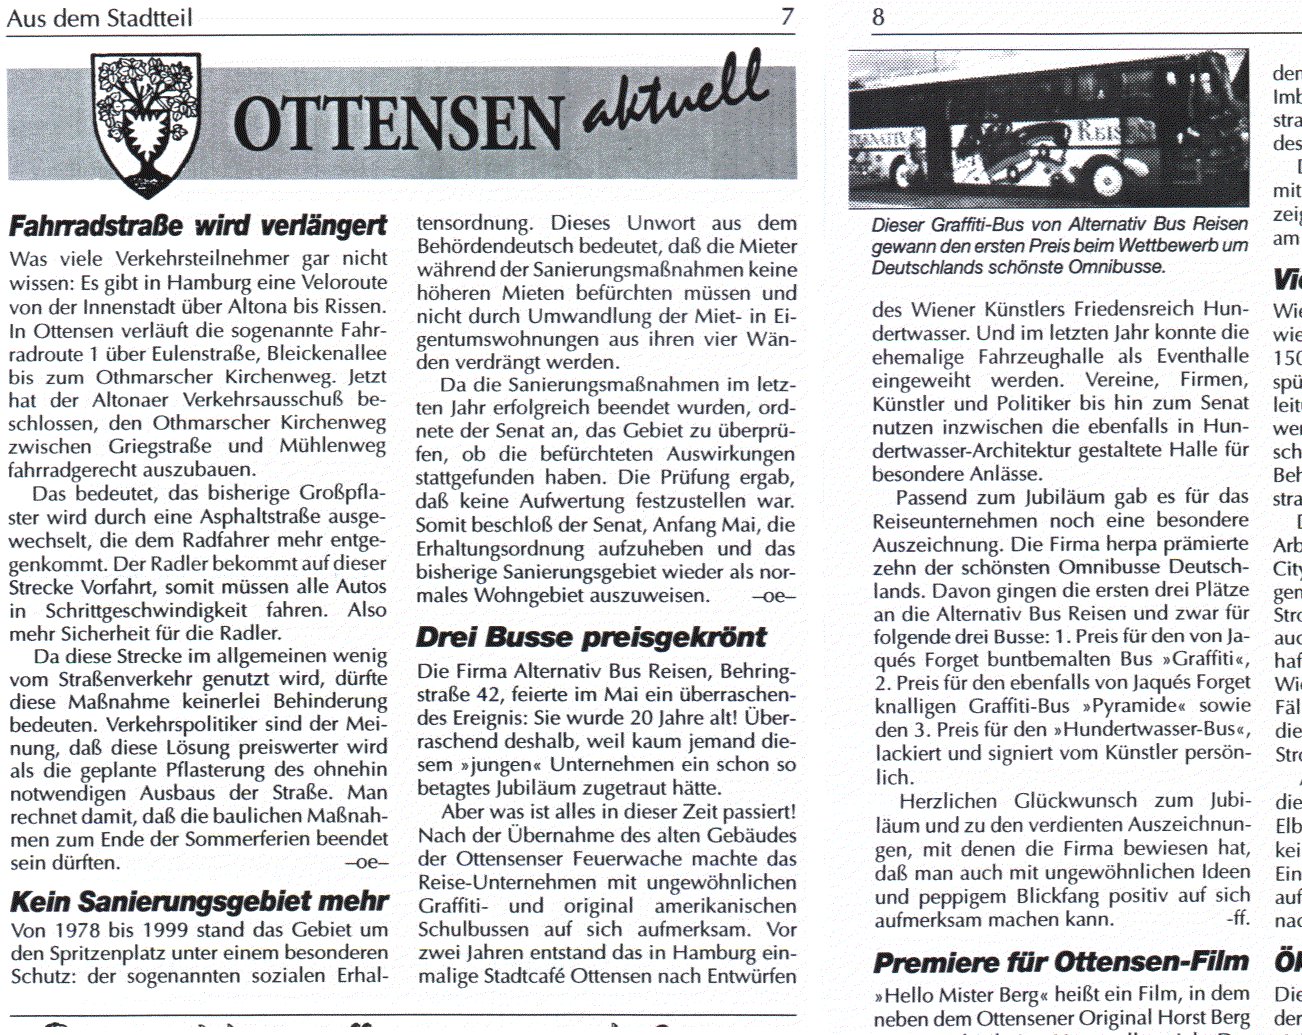 BRIEF AUS Ottensen vom 4.7.2000, Seite 7 und 8